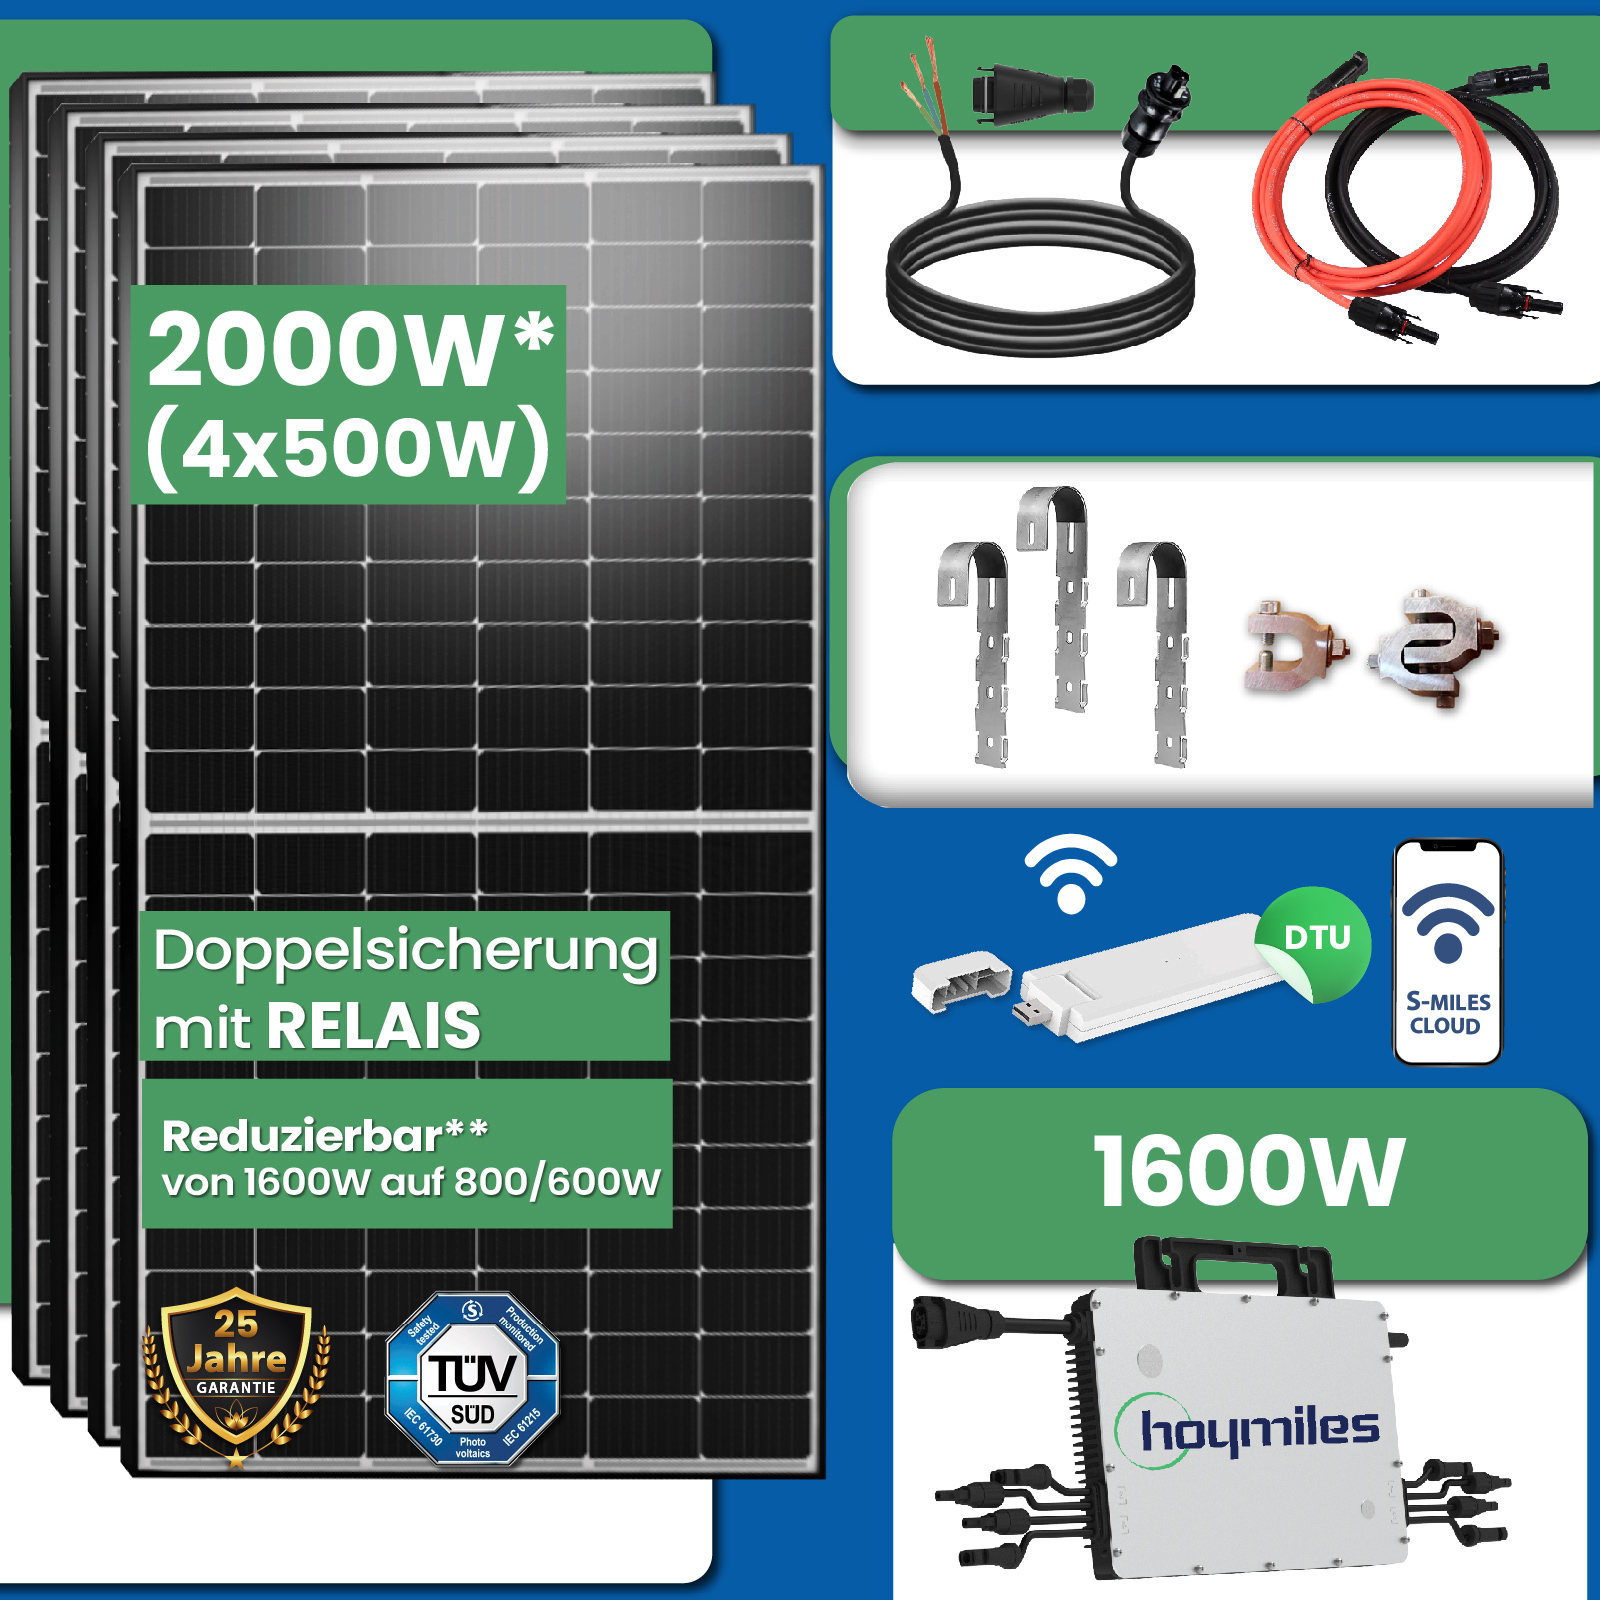 2000W Photovoltaik Balkonkraftwerk inkl. 500W Solarmodule